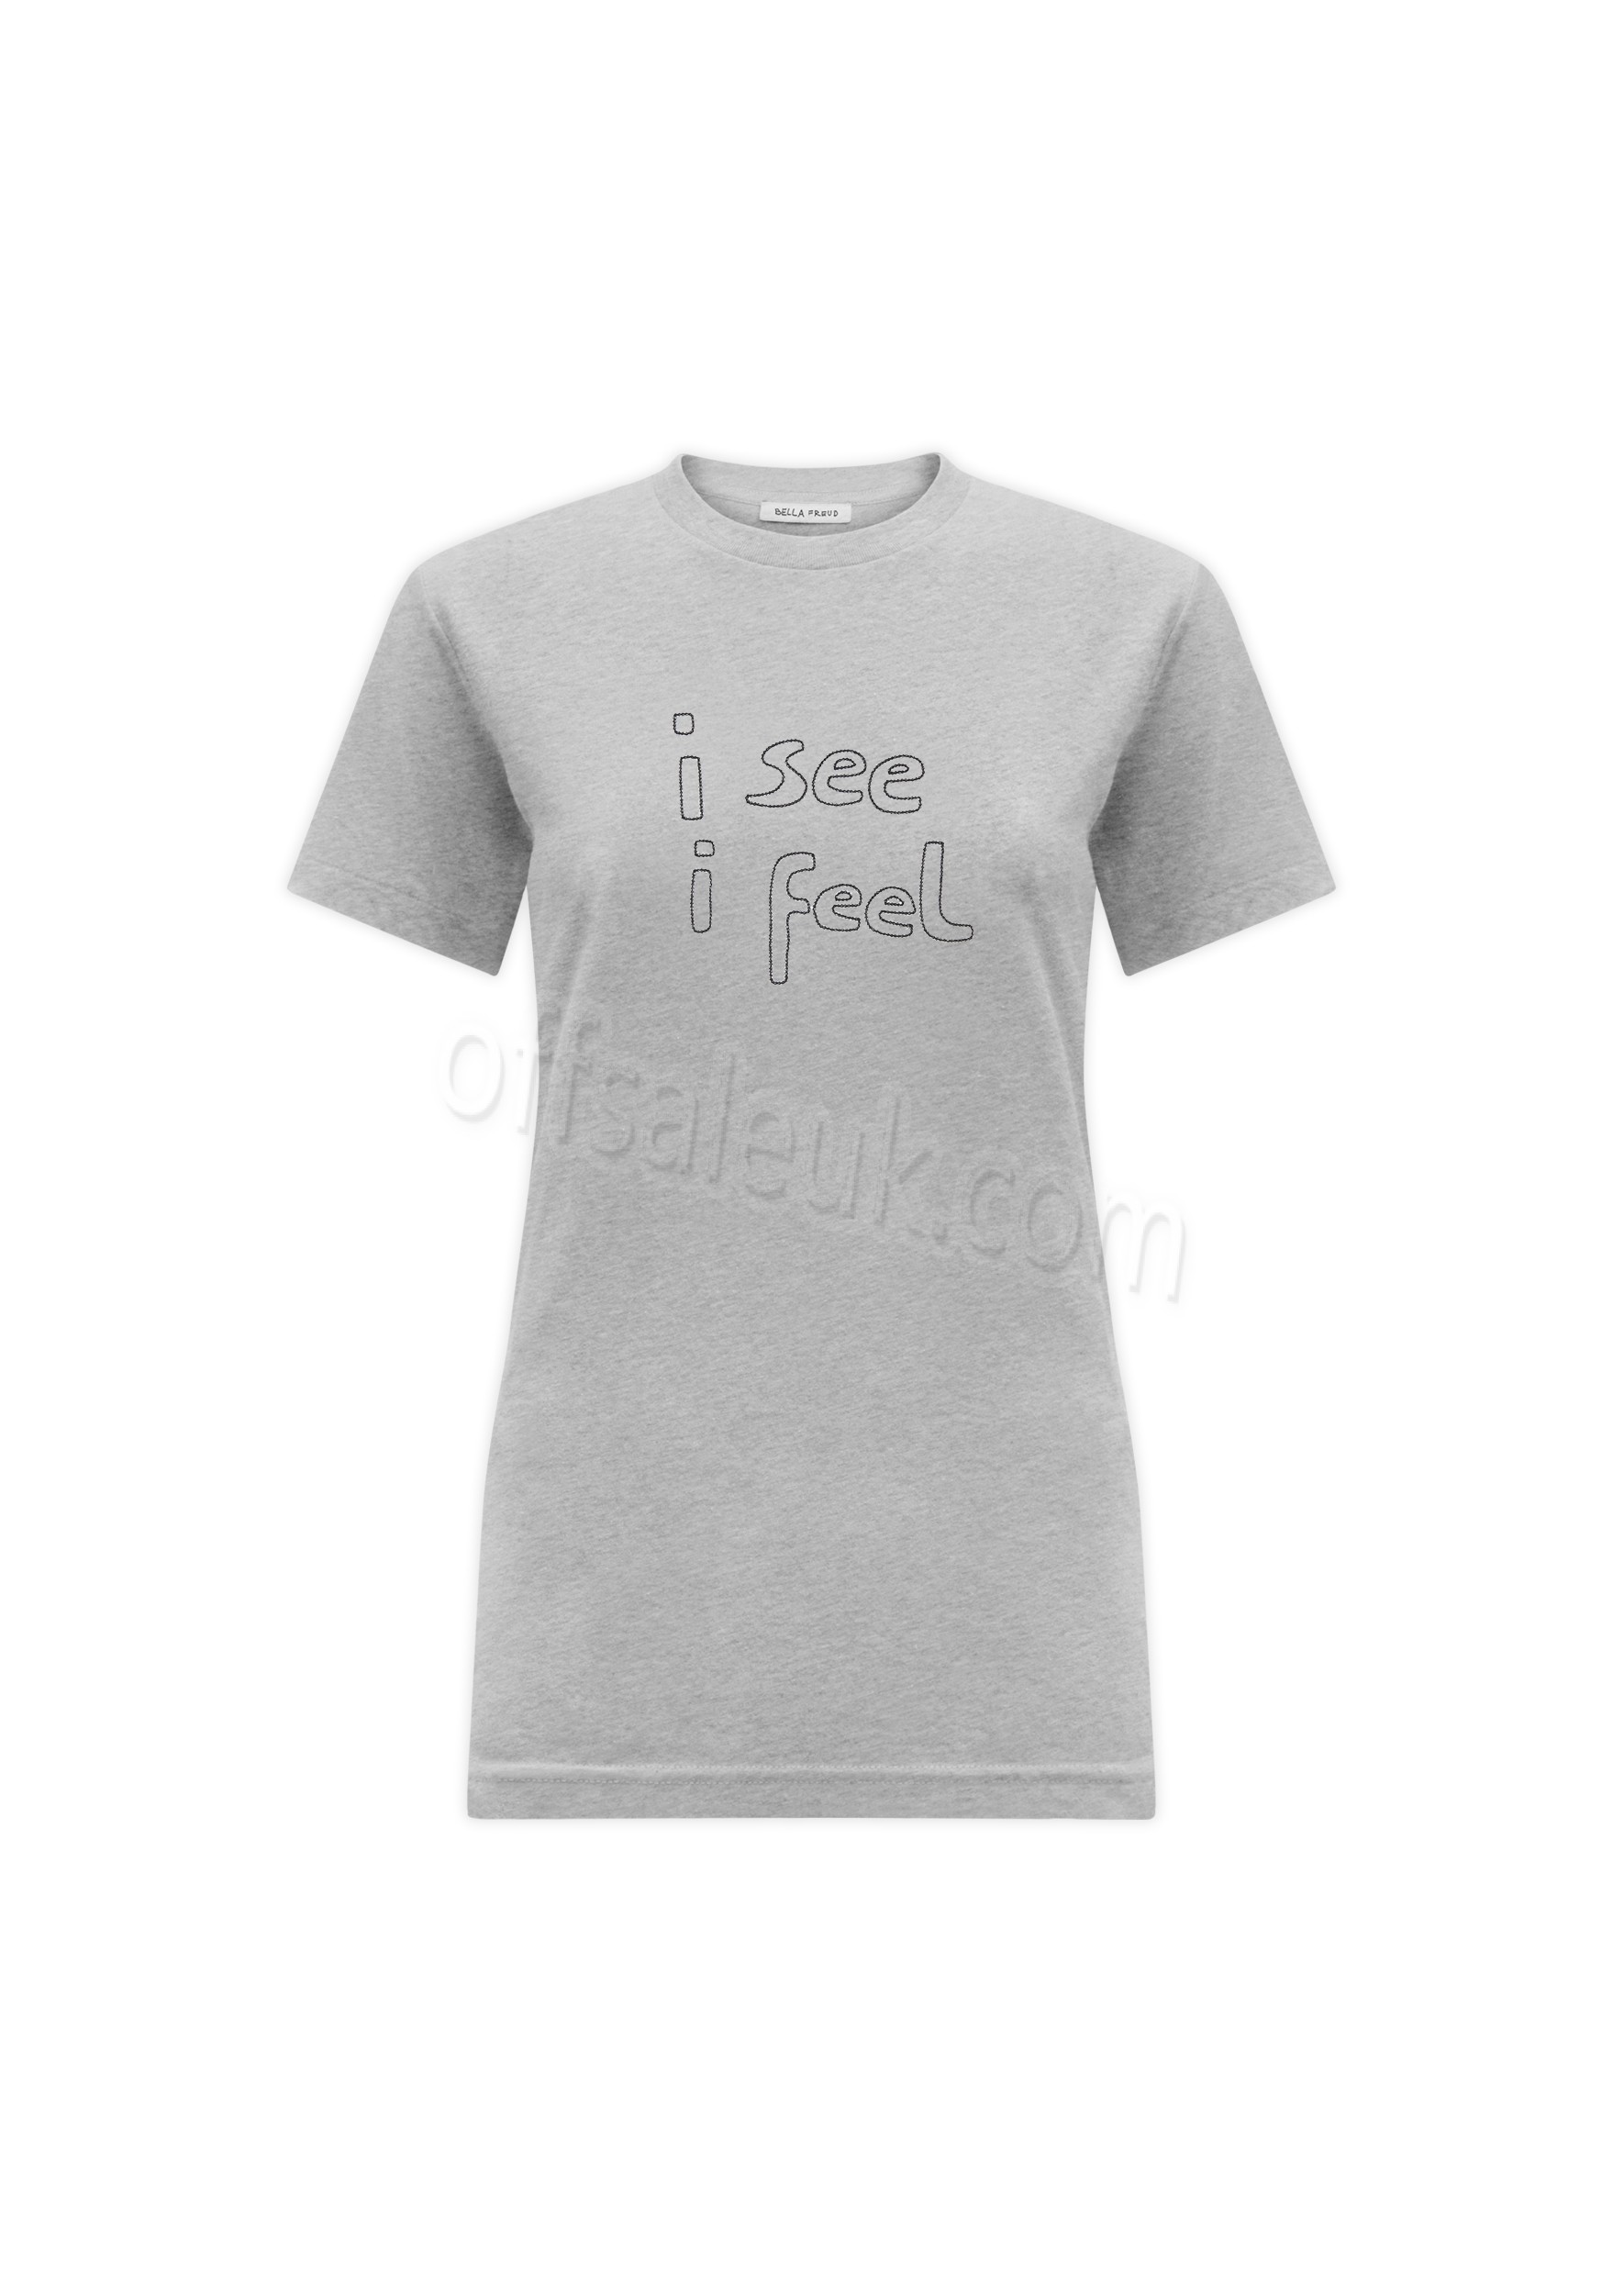 Bella Freud I See I Feel T-Shirt - Bella Freud I See I Feel T-Shirt